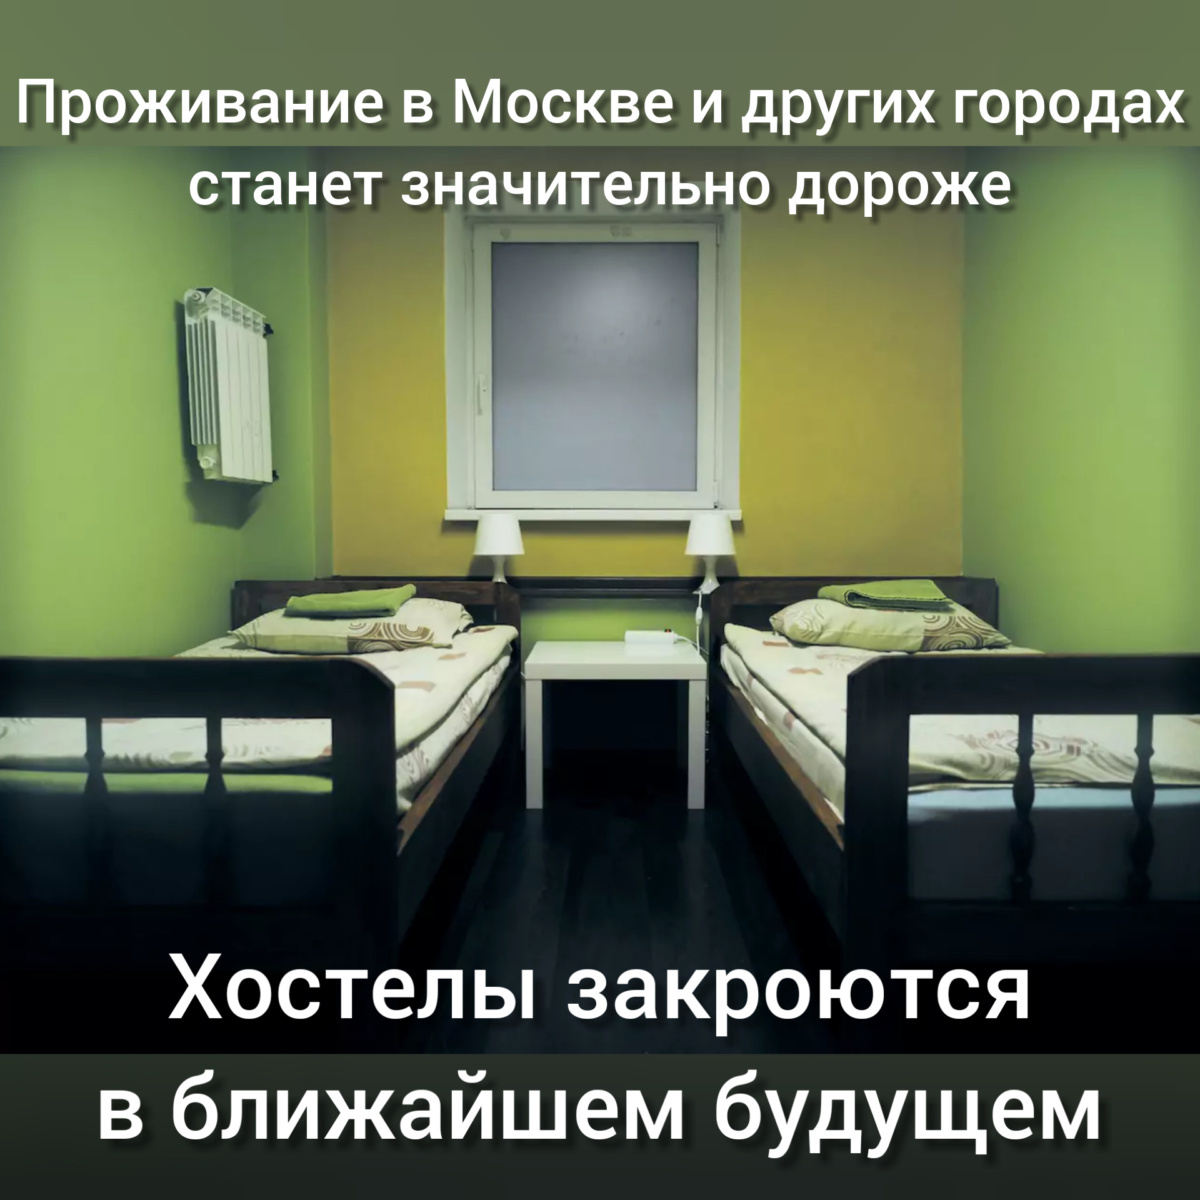 Якутские хостелы и гостиницы в Москве и Санкт-Петербурге готовятся к закрытию